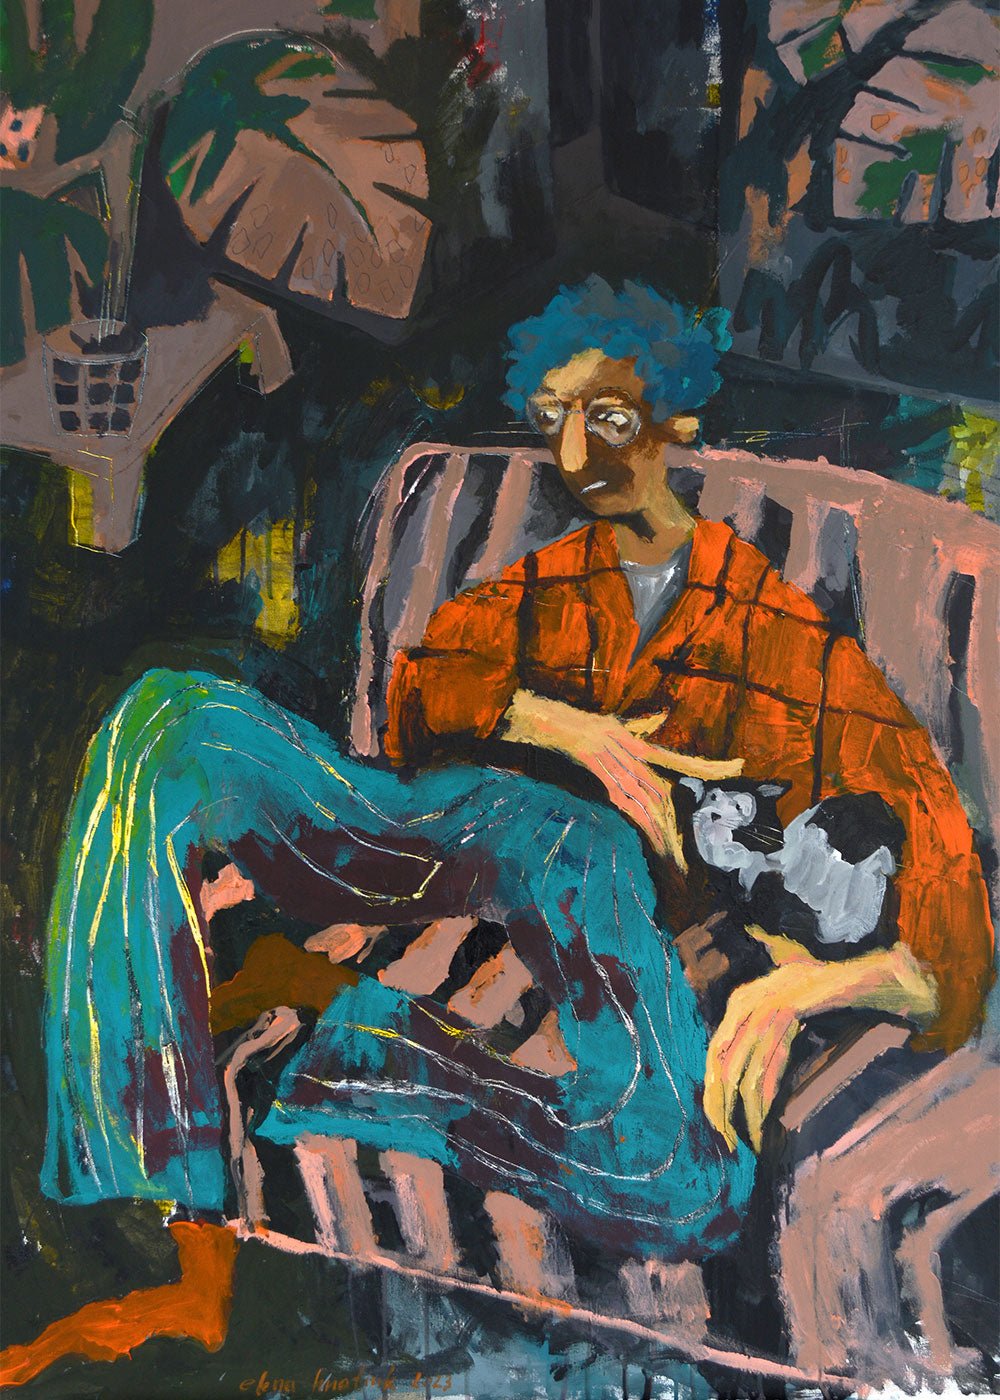 Poster av vacker oljemålning föreställande en man med sin katt som drömmer sig bort där han sitter på soffan. Vacker tavla med snygg färgskala.